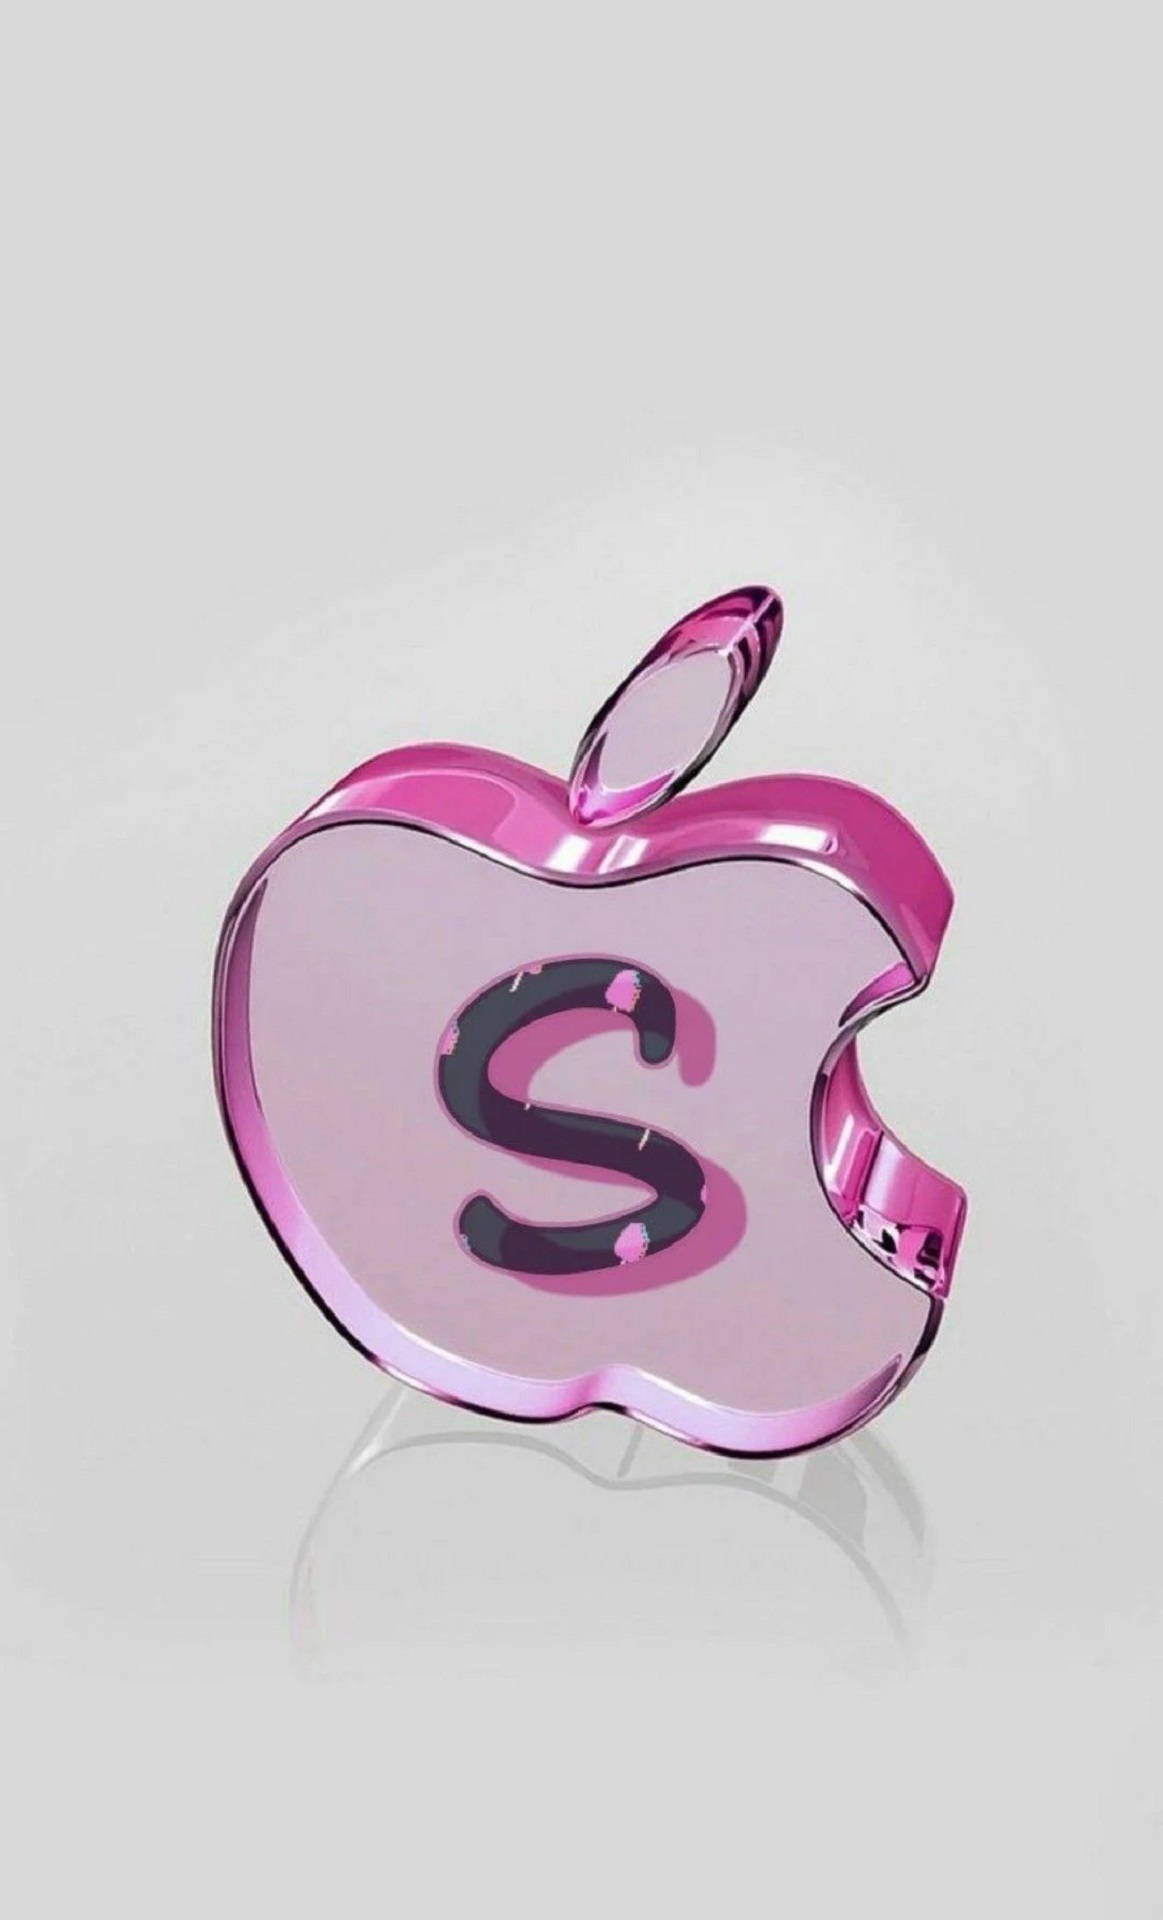 Letter S On Apple Logo Wallpaper